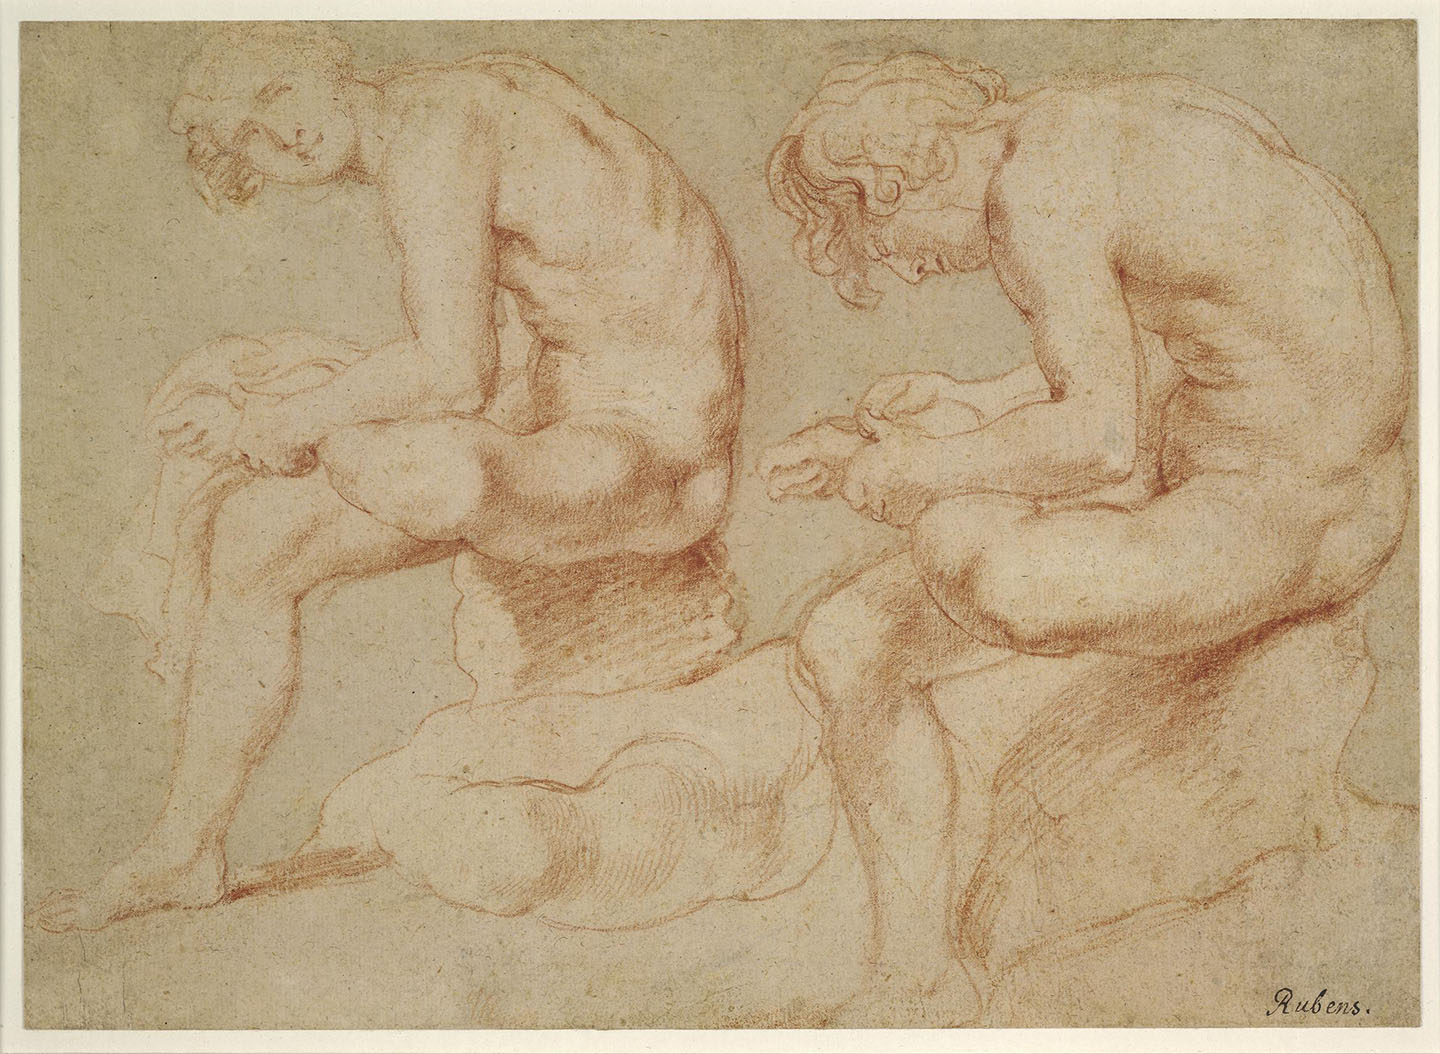 Hai nghiên cứu về bức tượng “Spinario” mô phỏng theo tượng điêu khắc bằng đồng, vào khoảng năm 1601–1602, họa sĩ Peter Paul Rubens. Bảo tàng Anh, London. (Ảnh: Tư liệu công cộng)